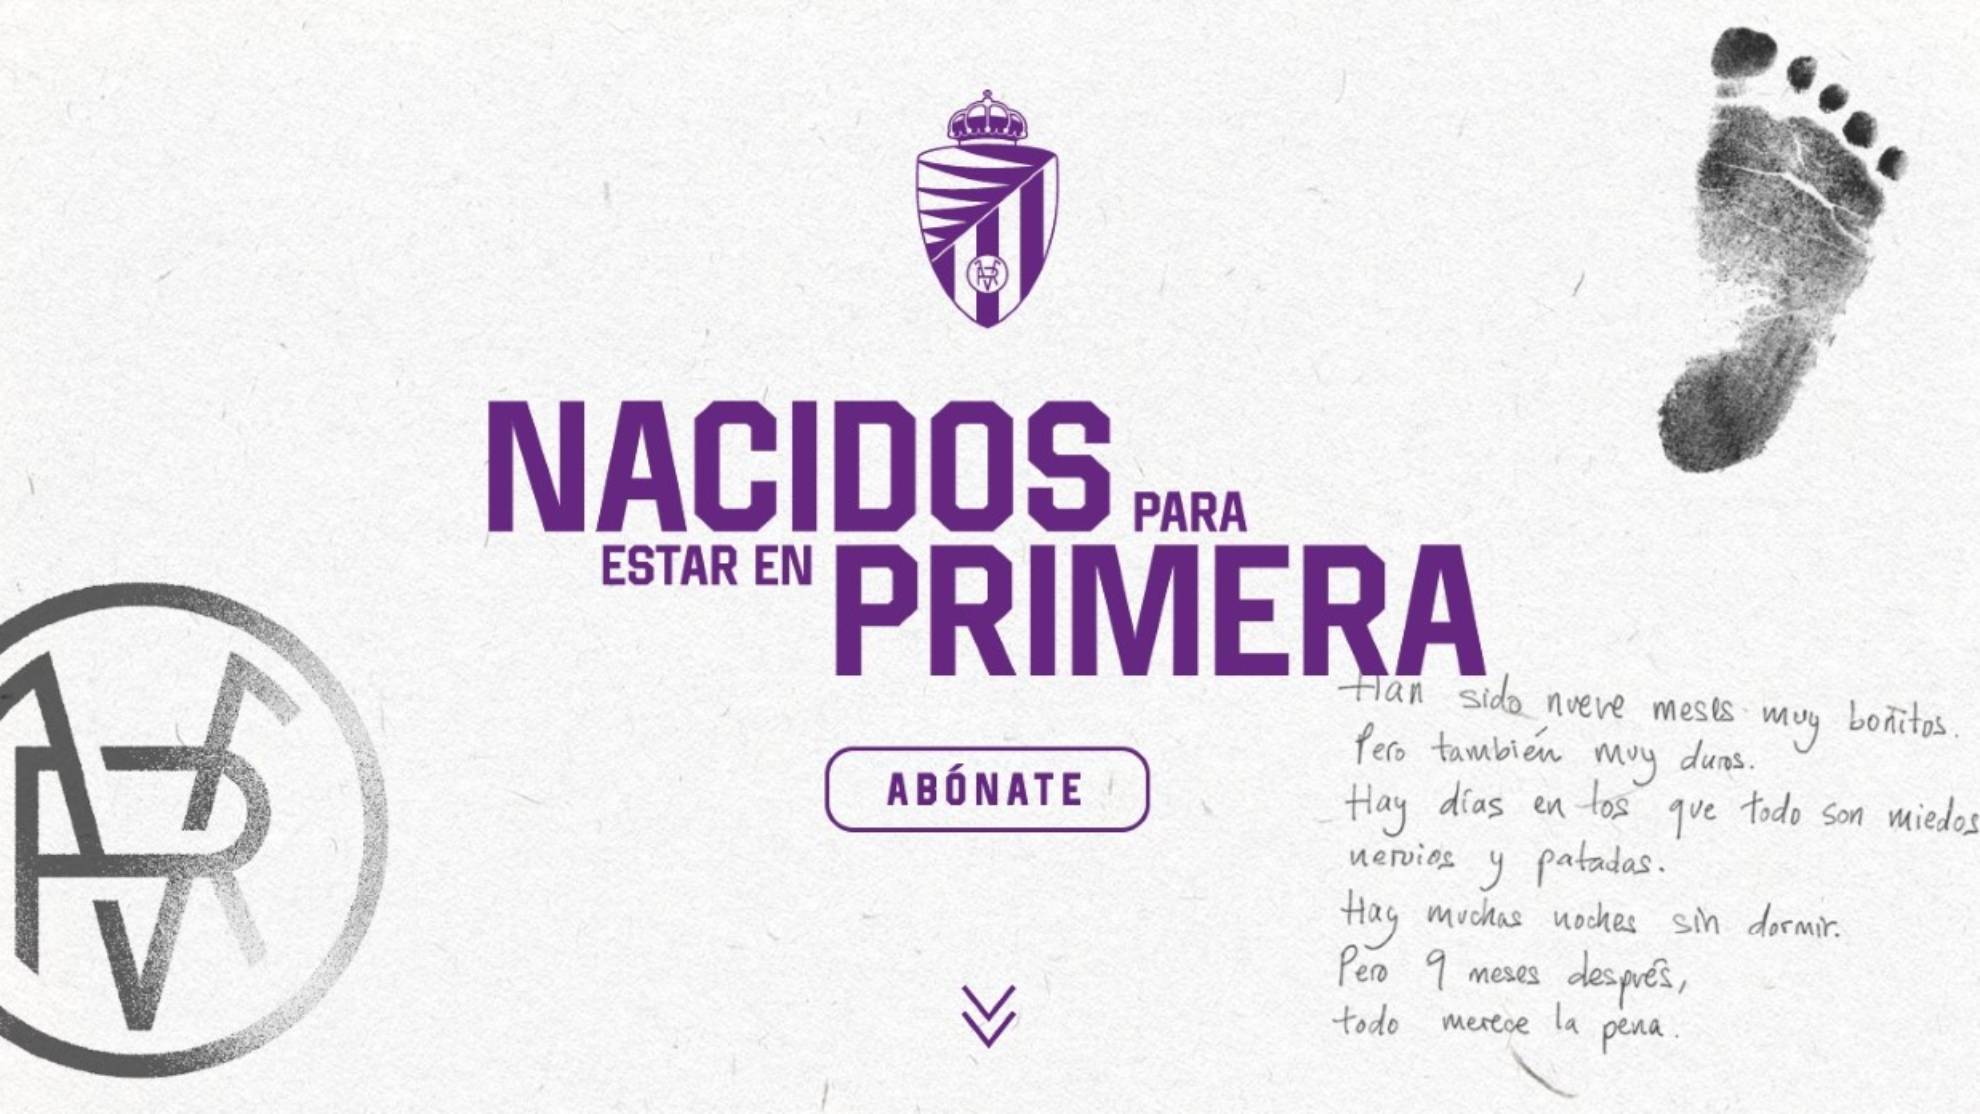 Imagen de la campaña de abonos del Valladolid.